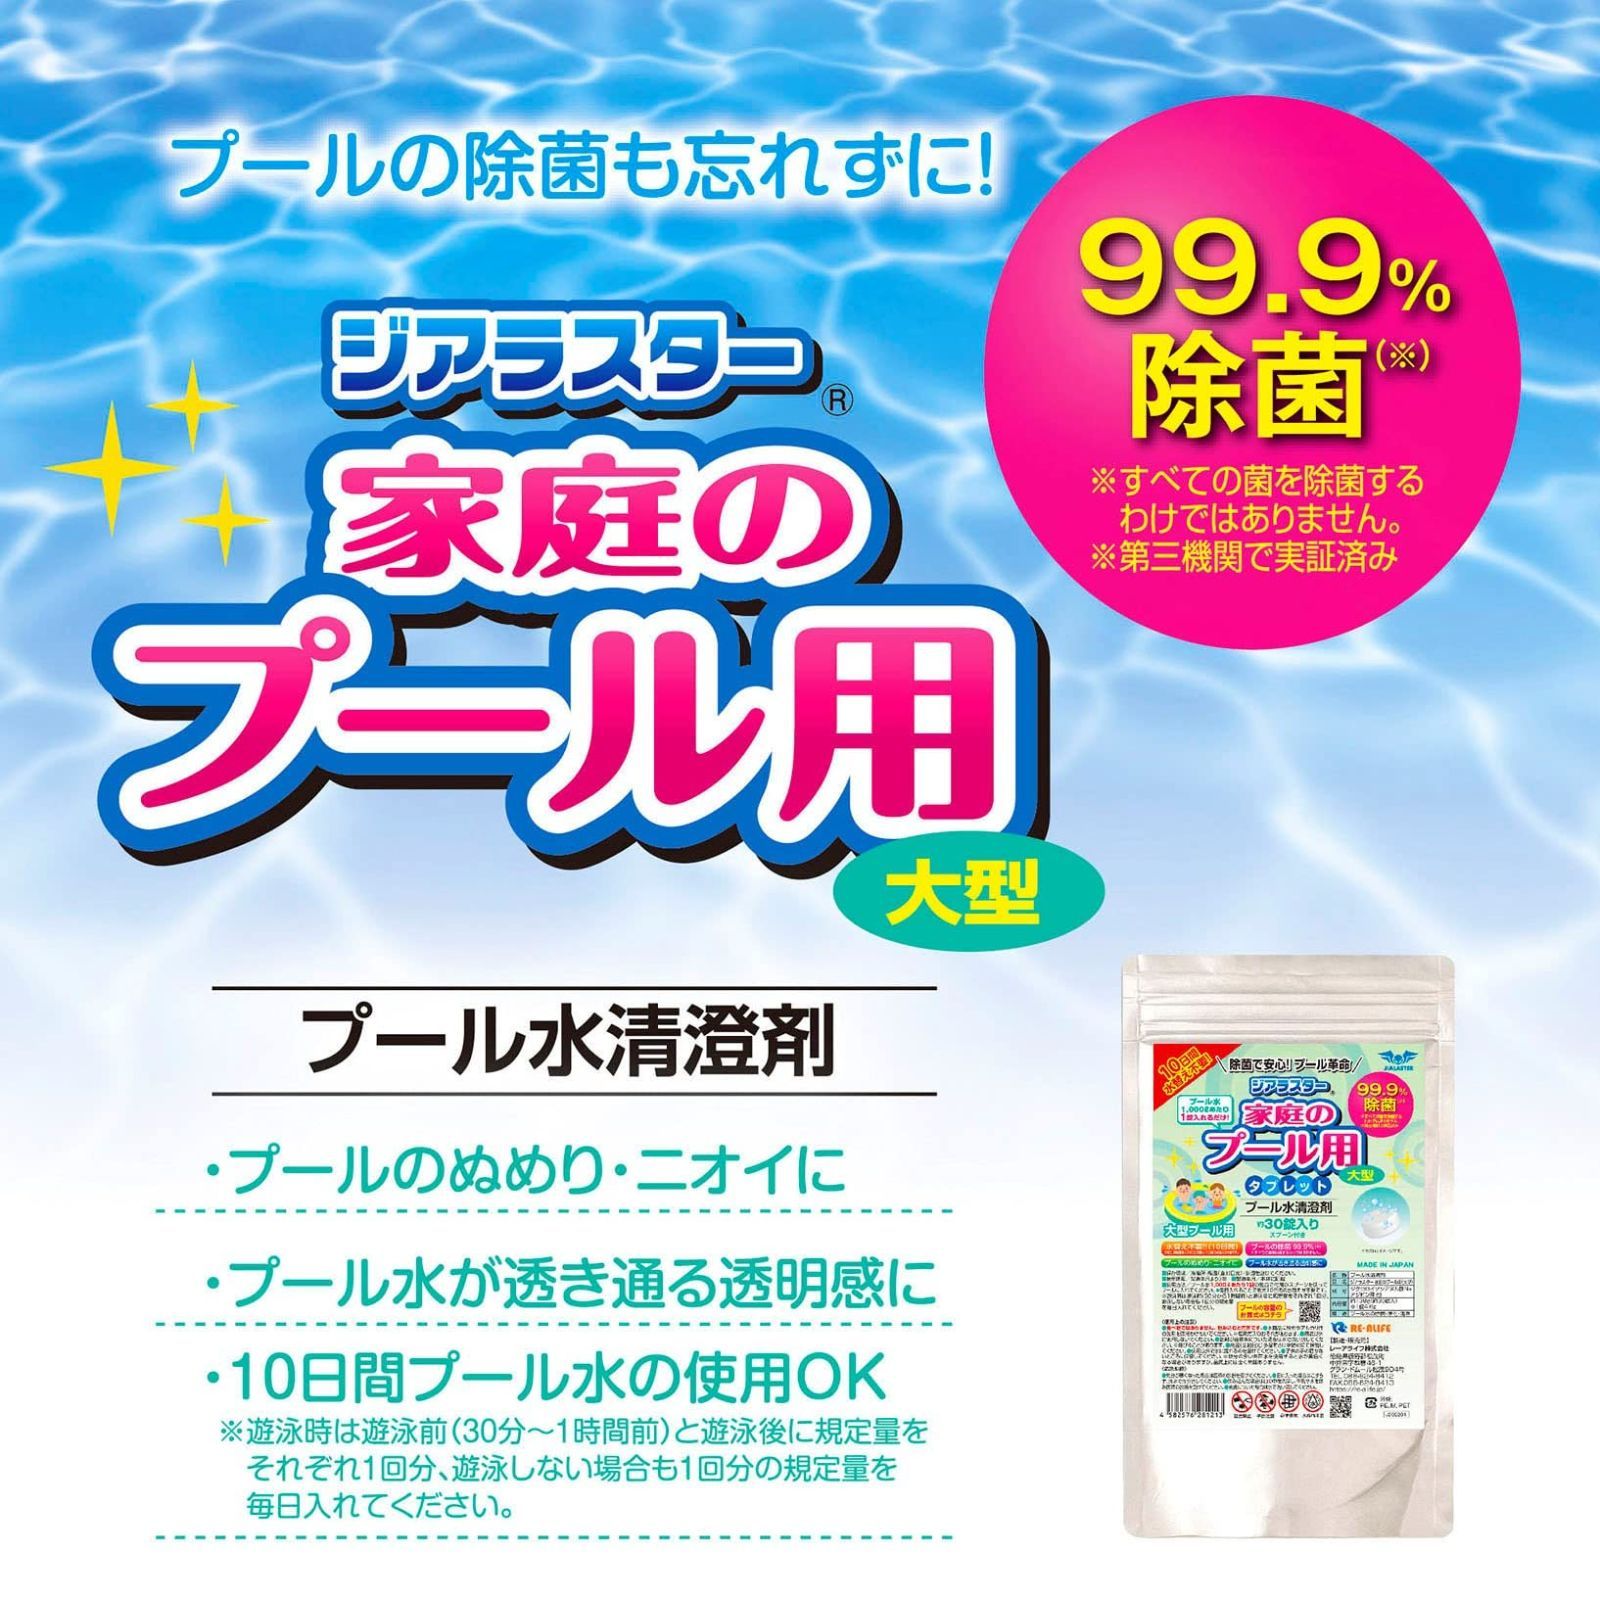  プール タブレット 1000Lに1個入れるだけ プール用 子供用プール プール小型 家庭用プール 塩素剤 除菌 塩素 家庭用 安心の日本製 送料無料